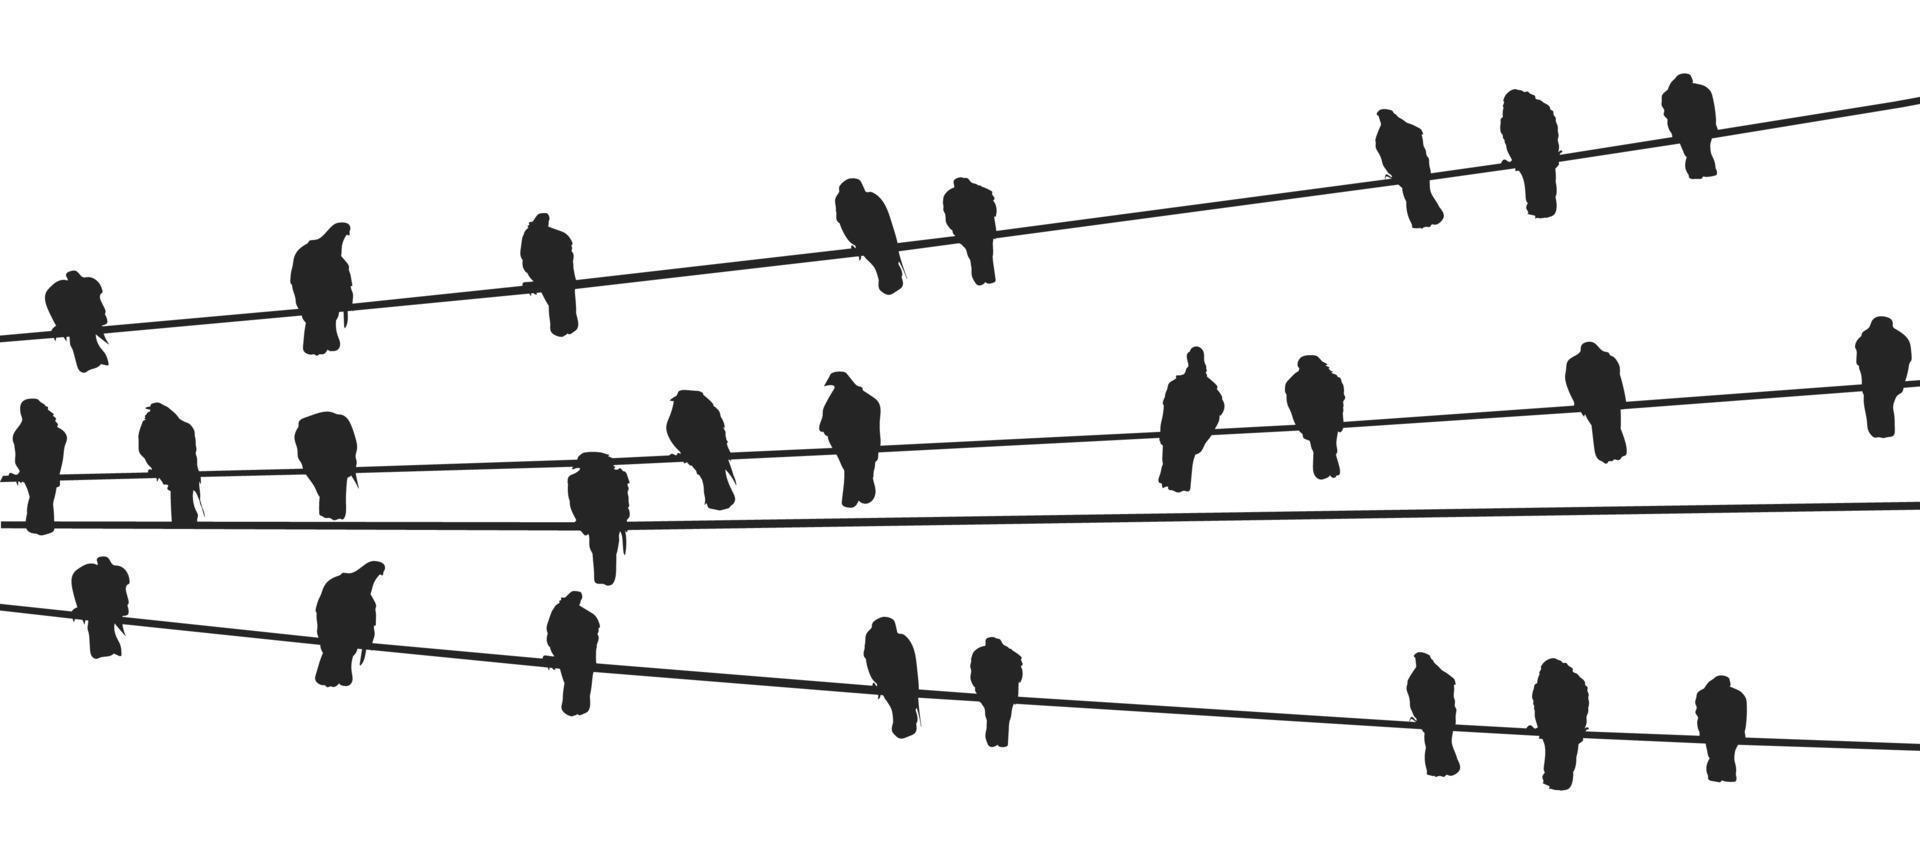 pájaros en un vector libre de alambre vector gratis